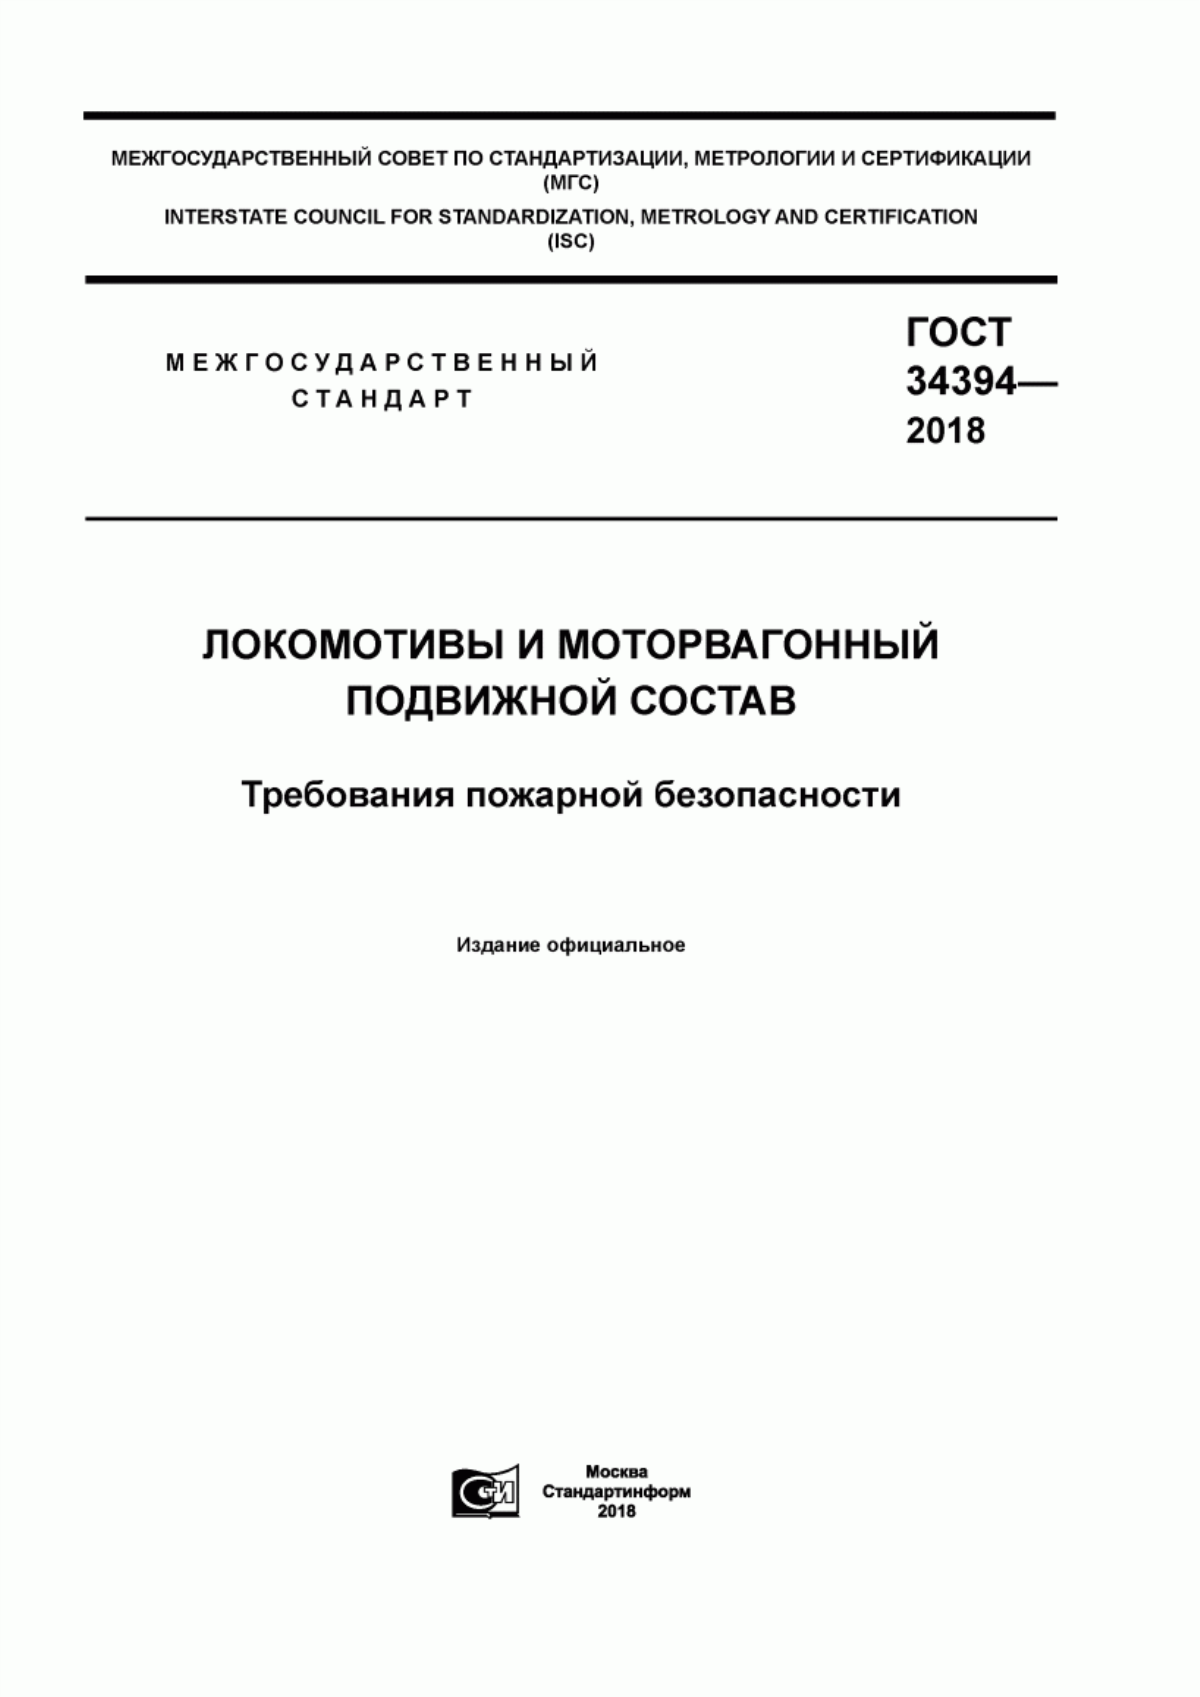 ГОСТ 34394-2018 Локомотивы и моторвагонный подвижной состав. Требования пожарной безопасности